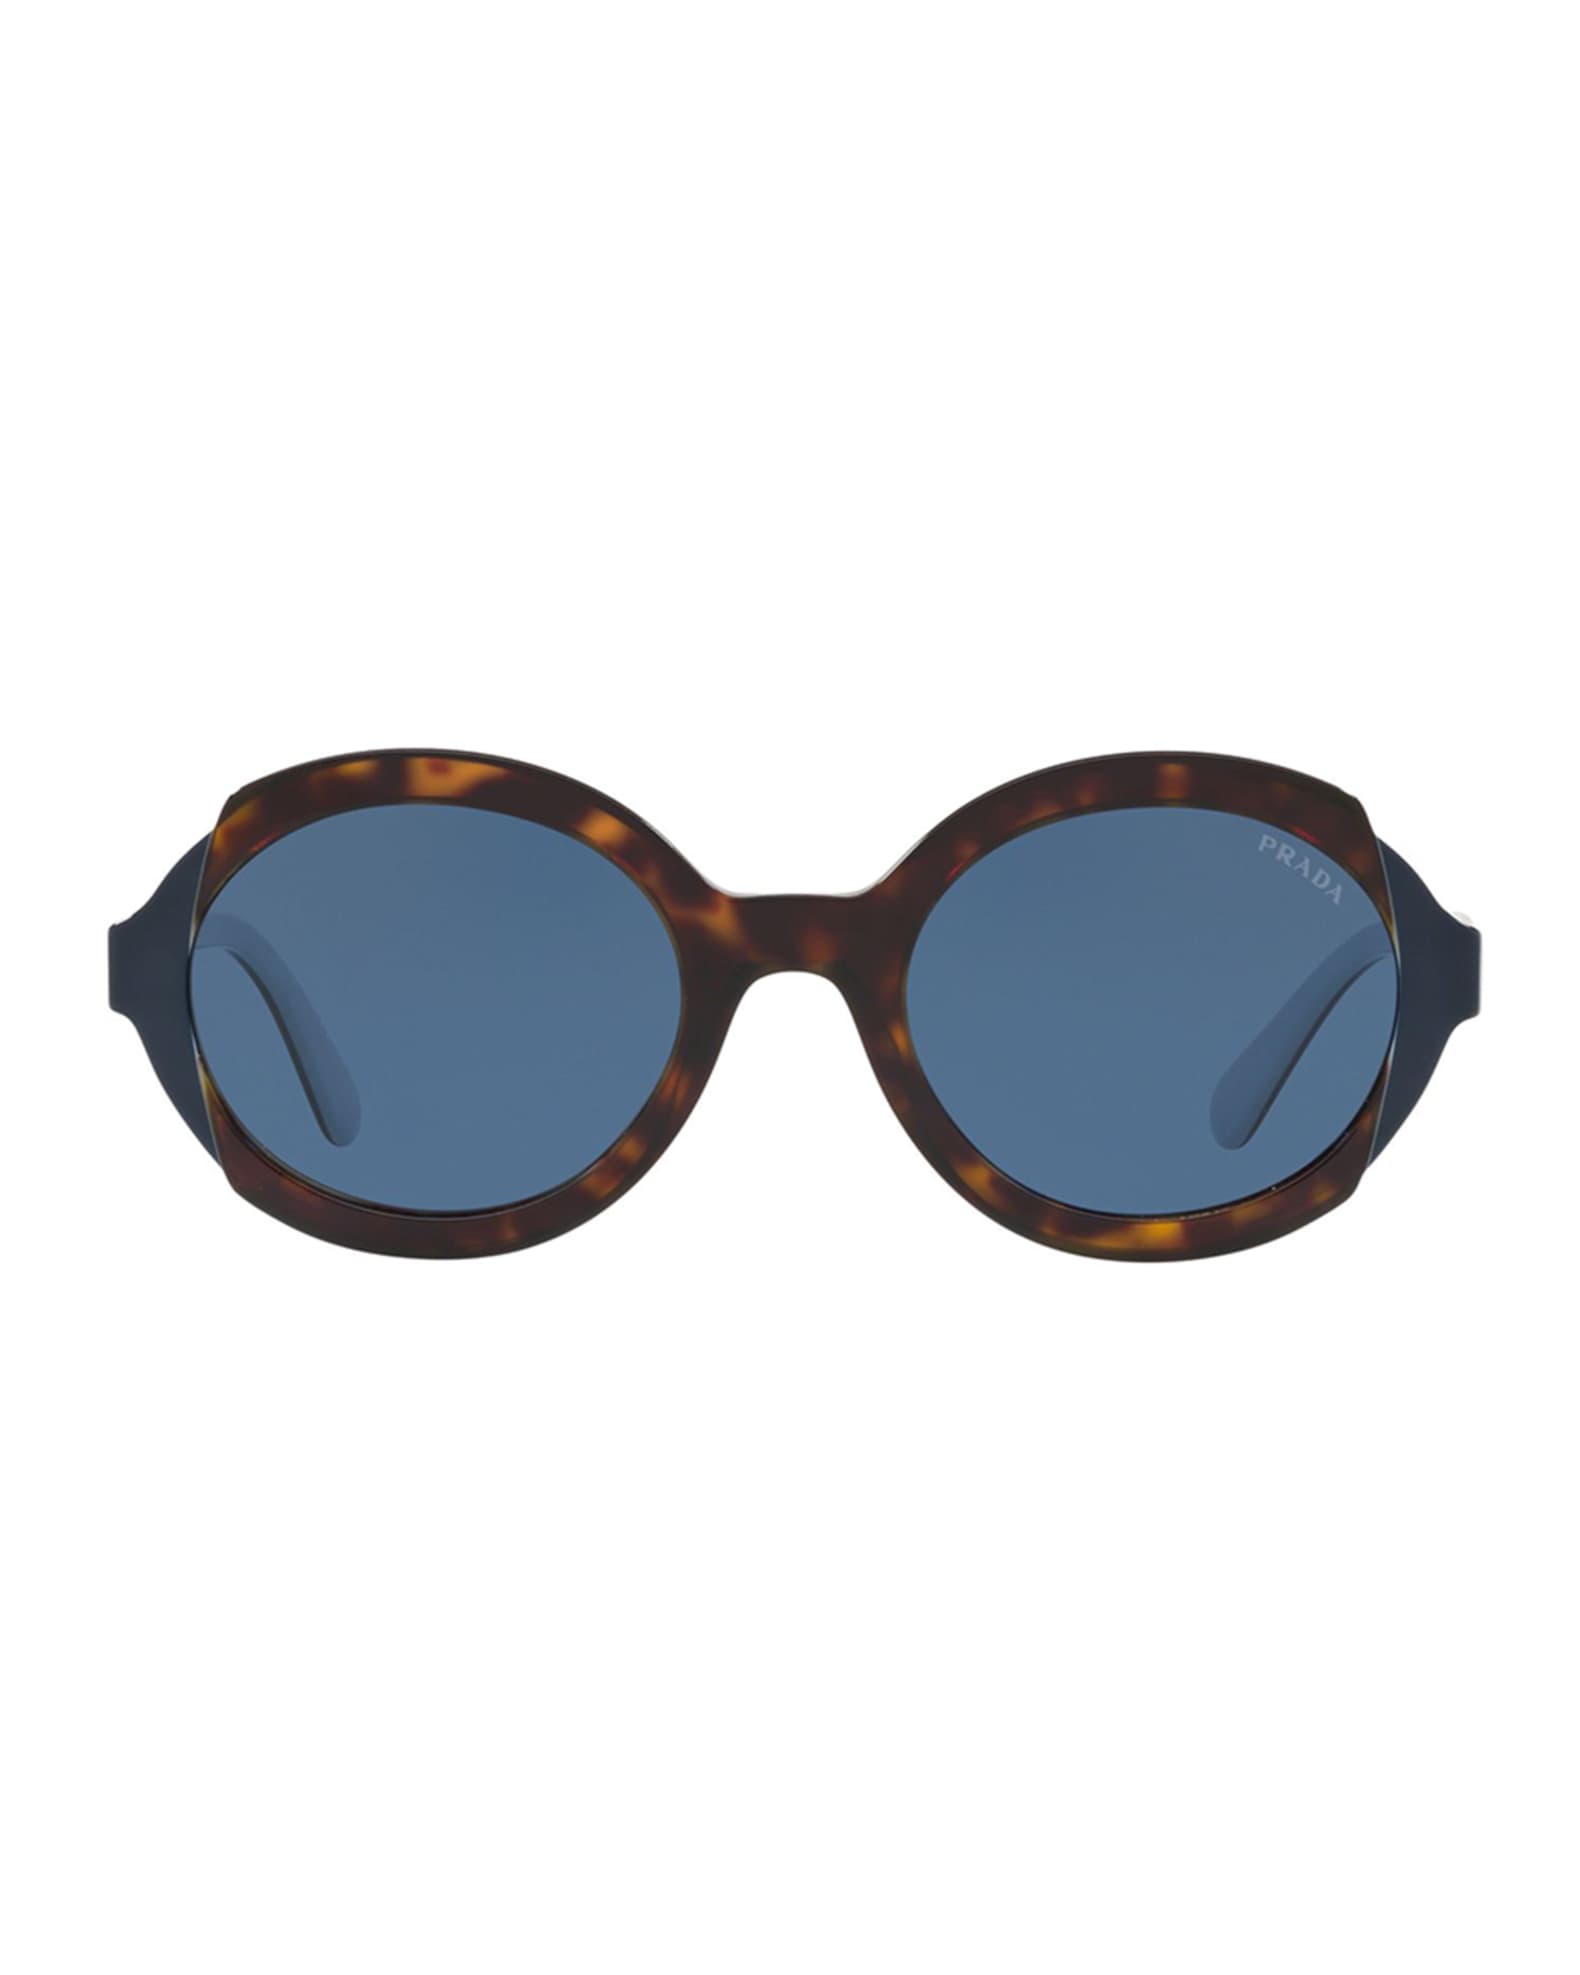 Prada Mirrored Acetate Sunglasses | Neiman Marcus